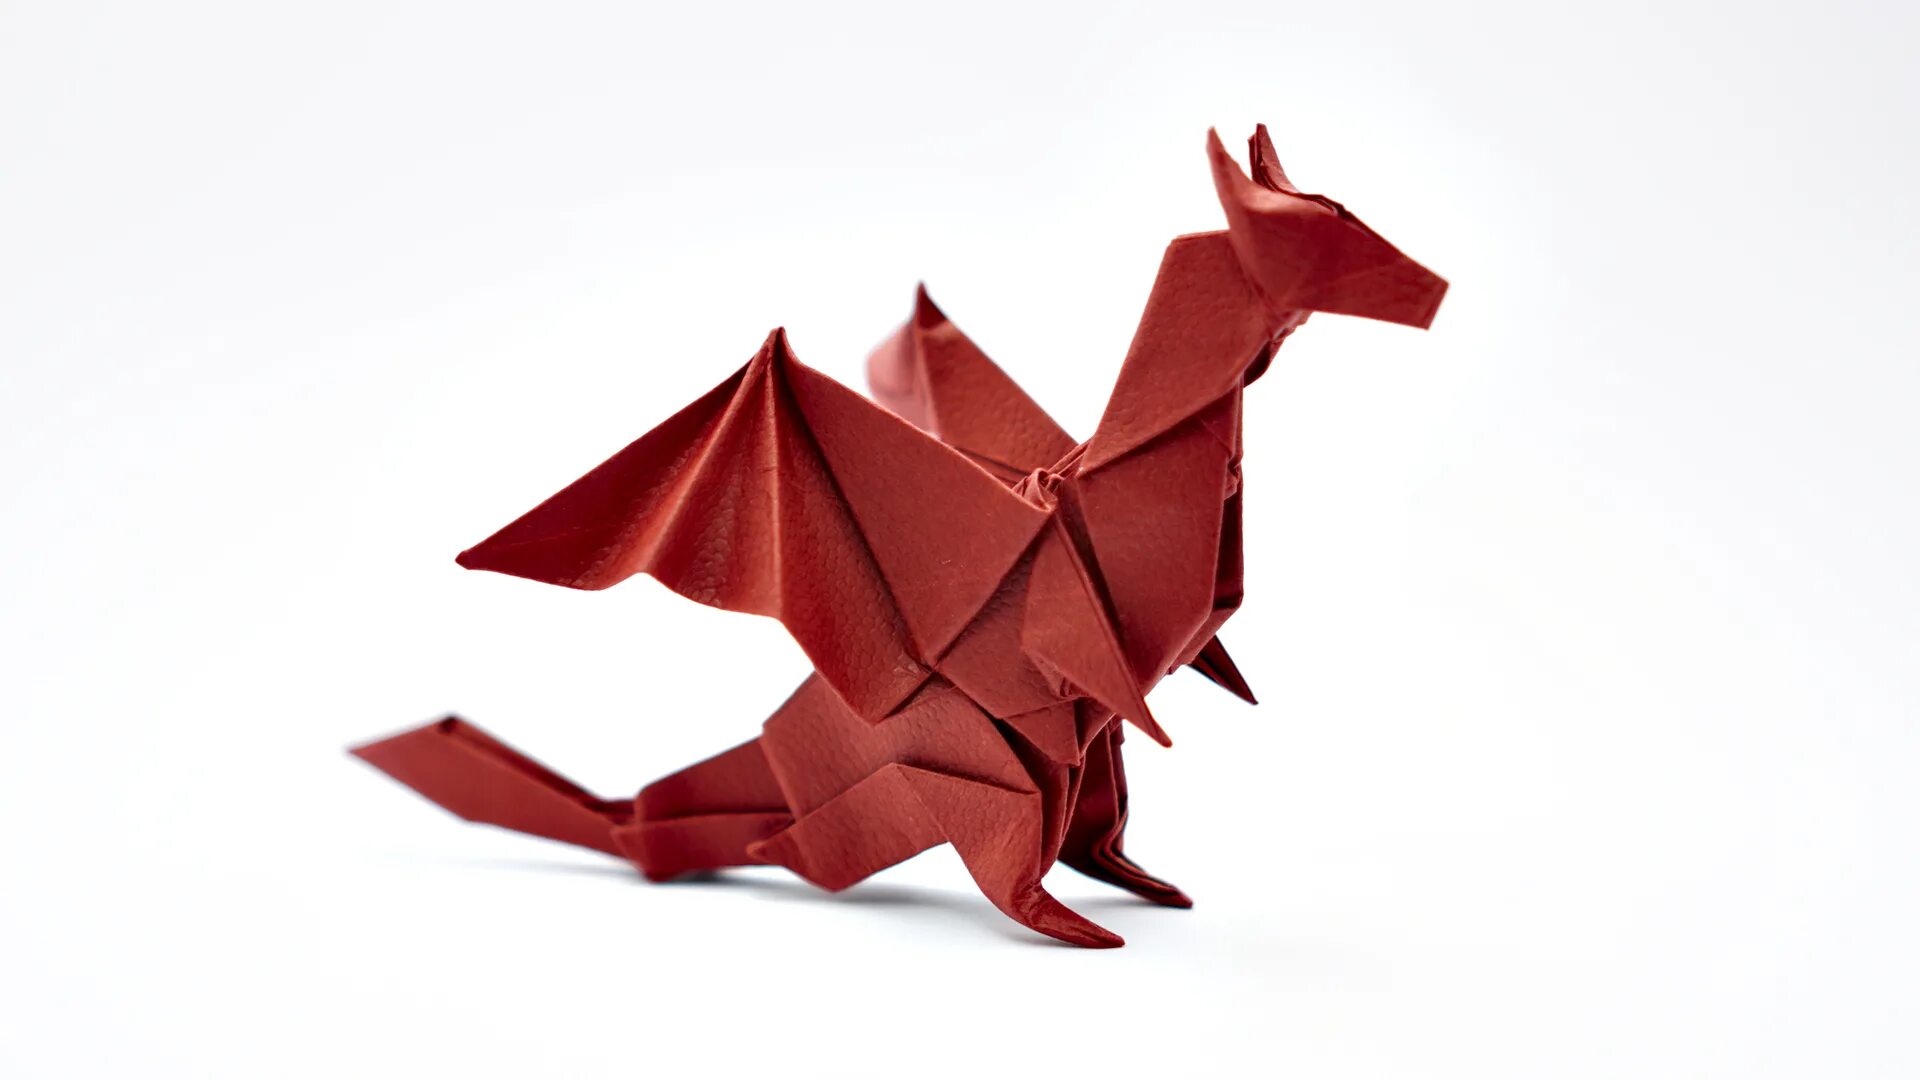 Дракон из бумаги без клея. Оригами Джо Накашима. Оригами Джо Накашима дракон. Nargacuga Doragon оригами. Туториал оригами дракон Джо Накашима.